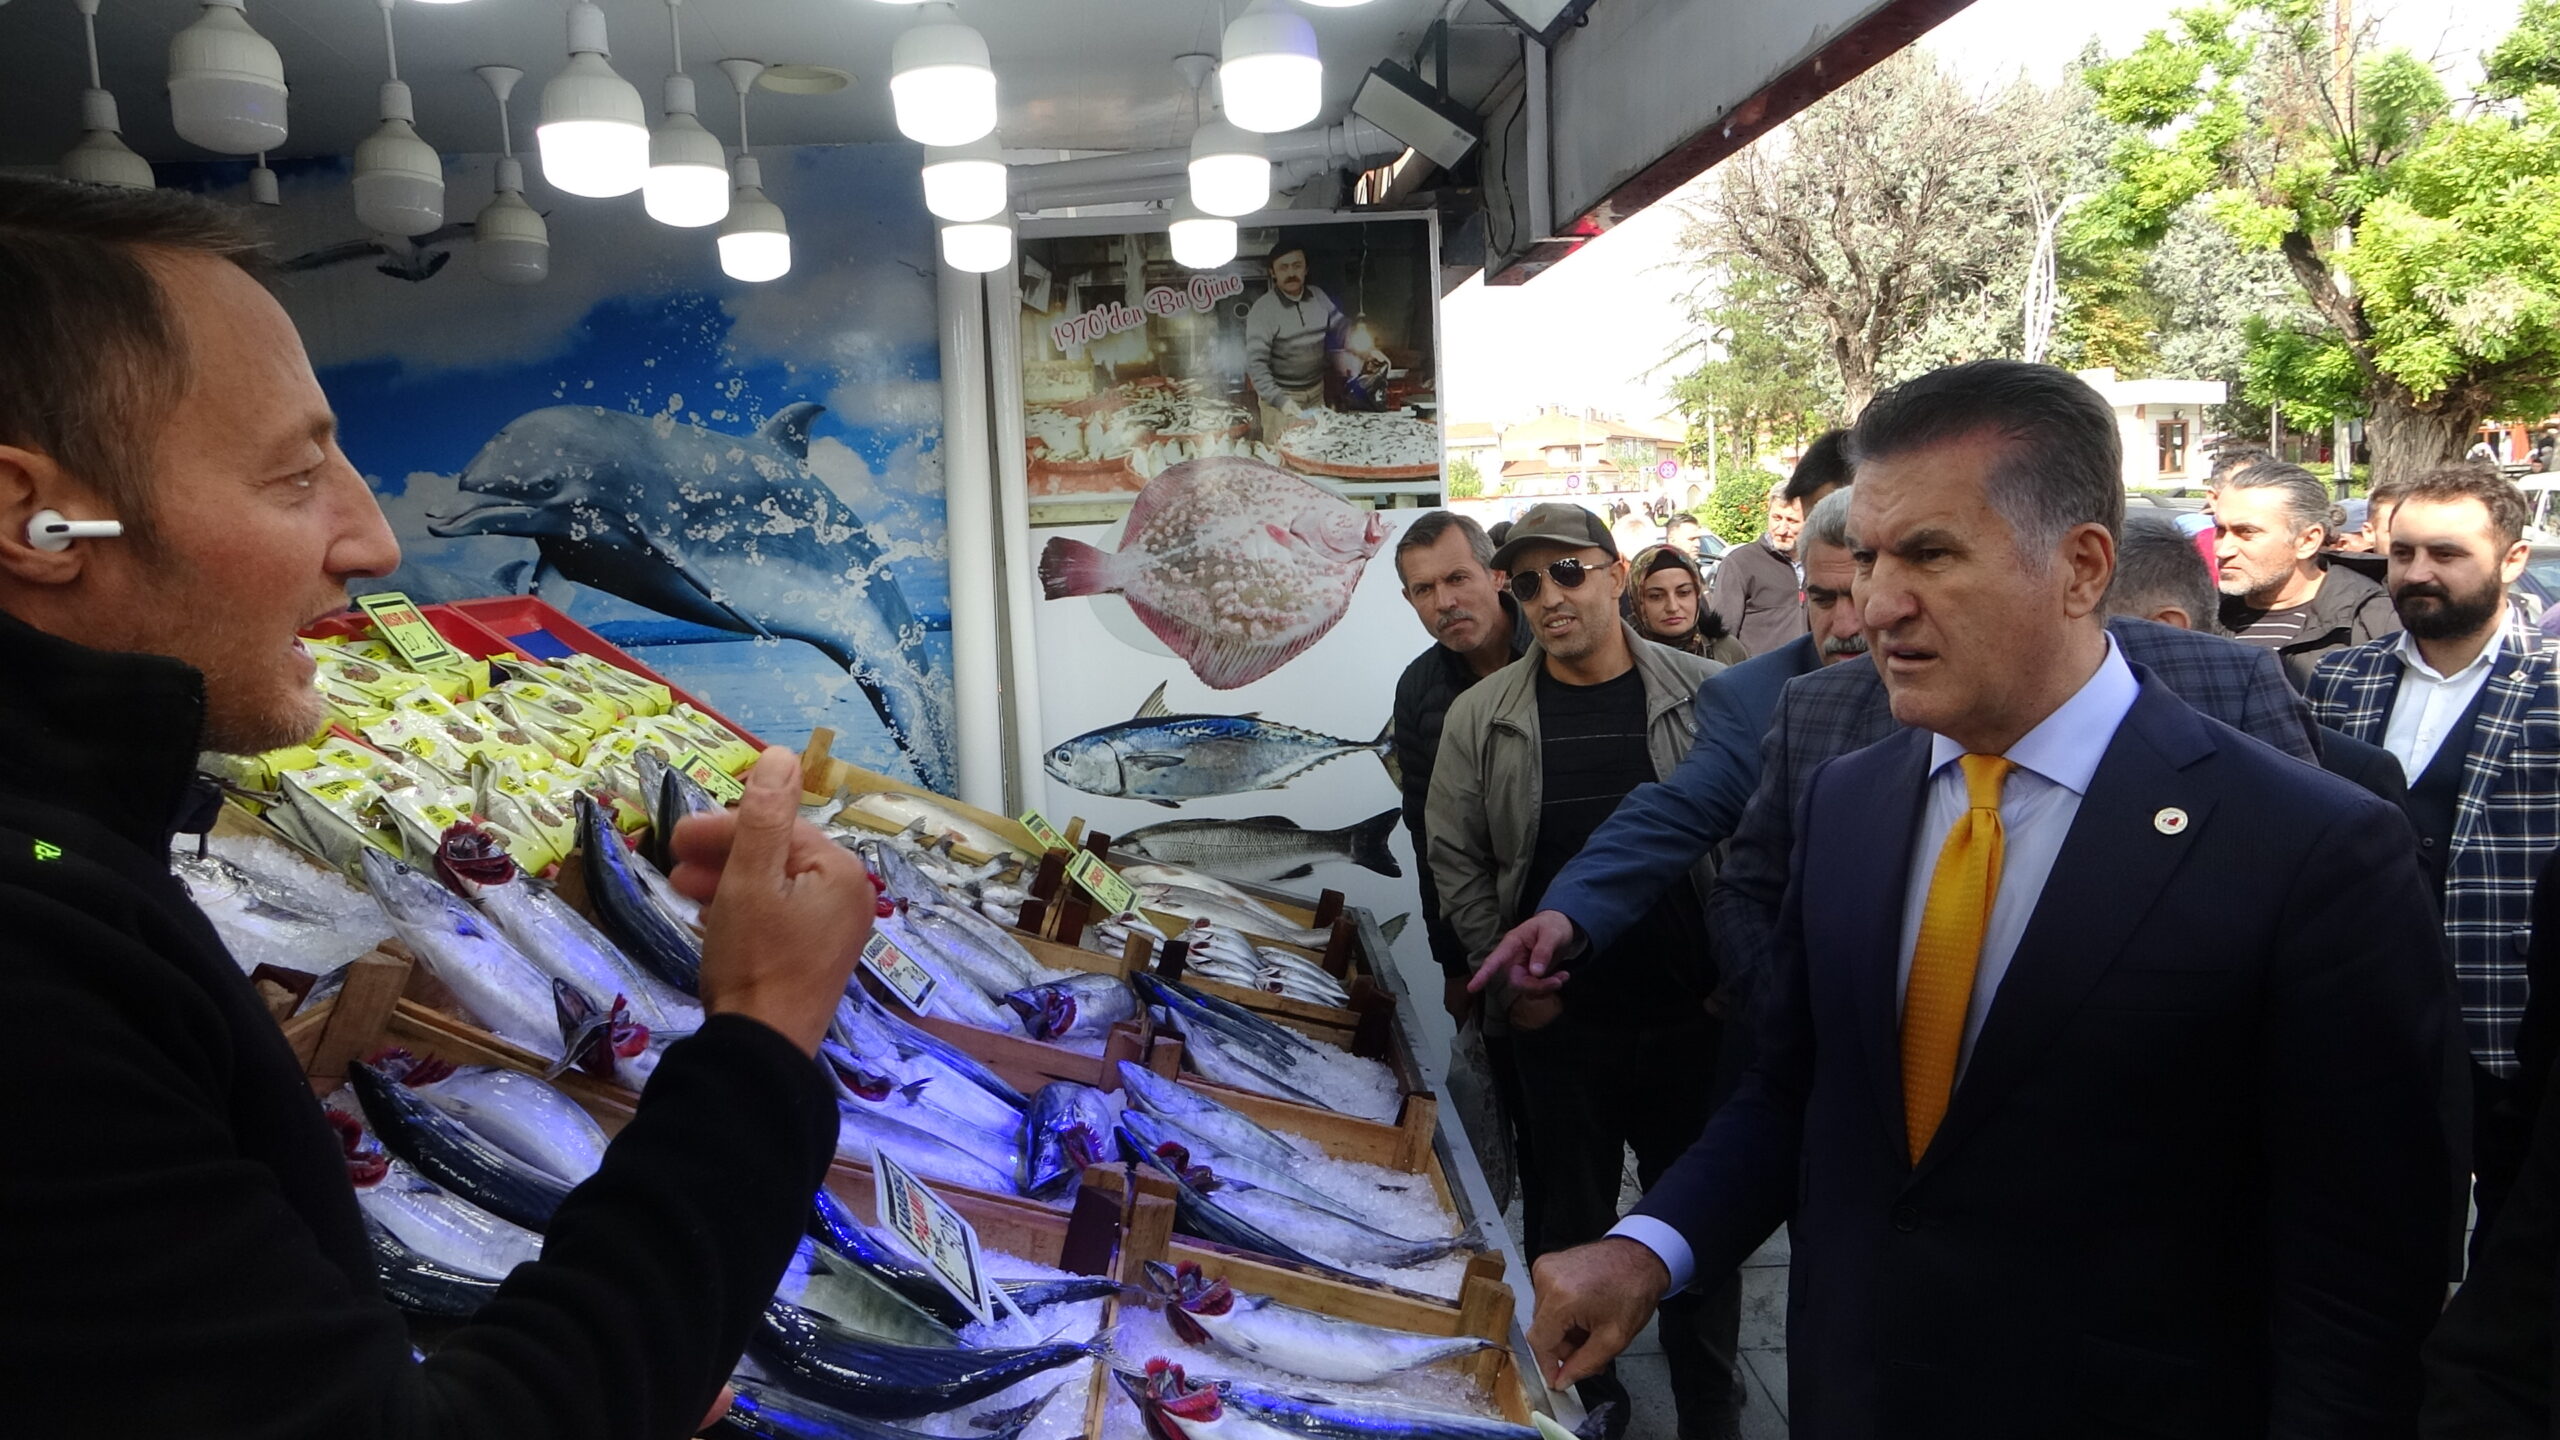 TDP Genel Başkanı Sarıgül, Çorum’da “af” çağrısını yineledi